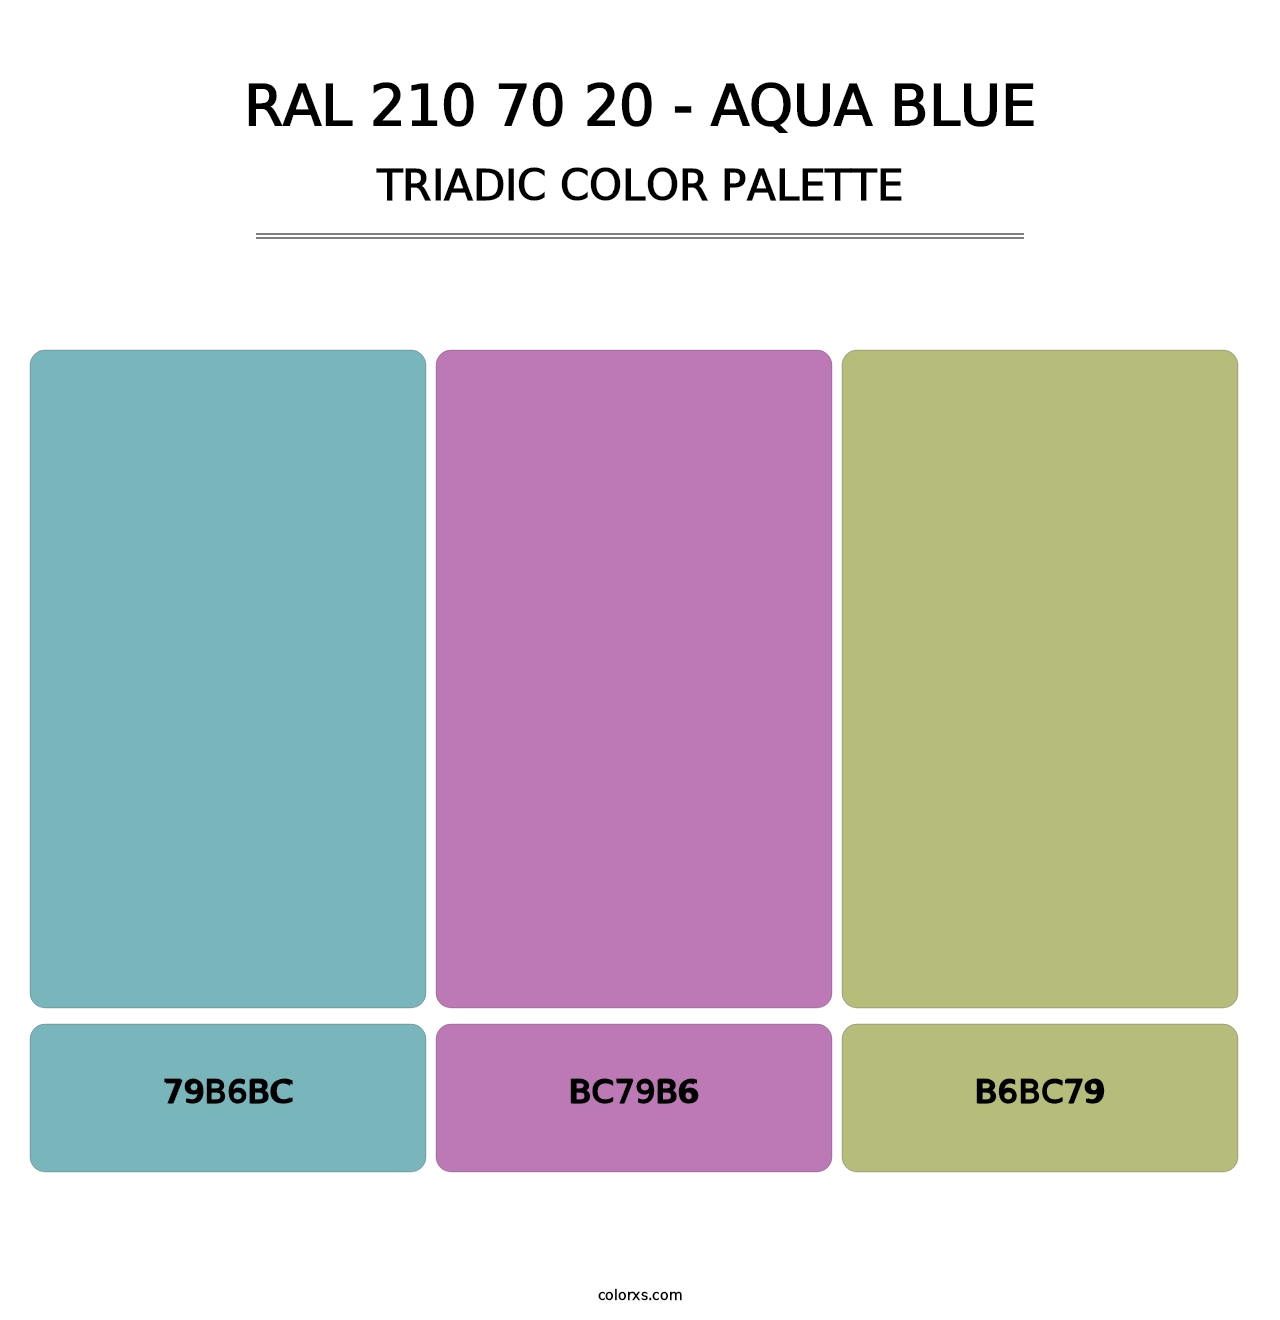 RAL 210 70 20 - Aqua Blue - Triadic Color Palette